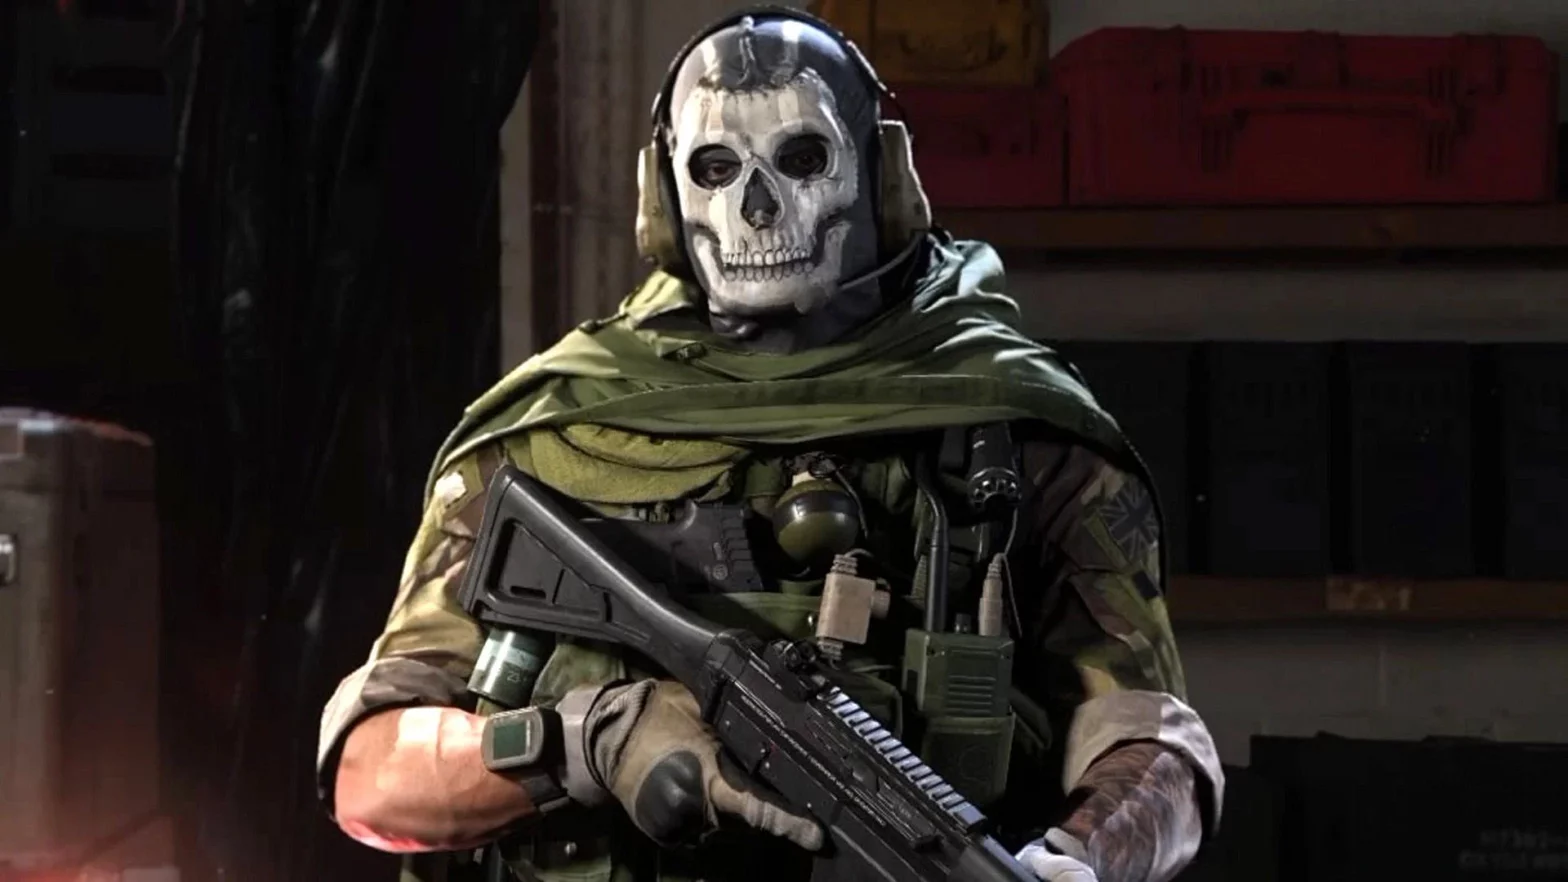 What is the Ghost meme in Modern Warfare 2?